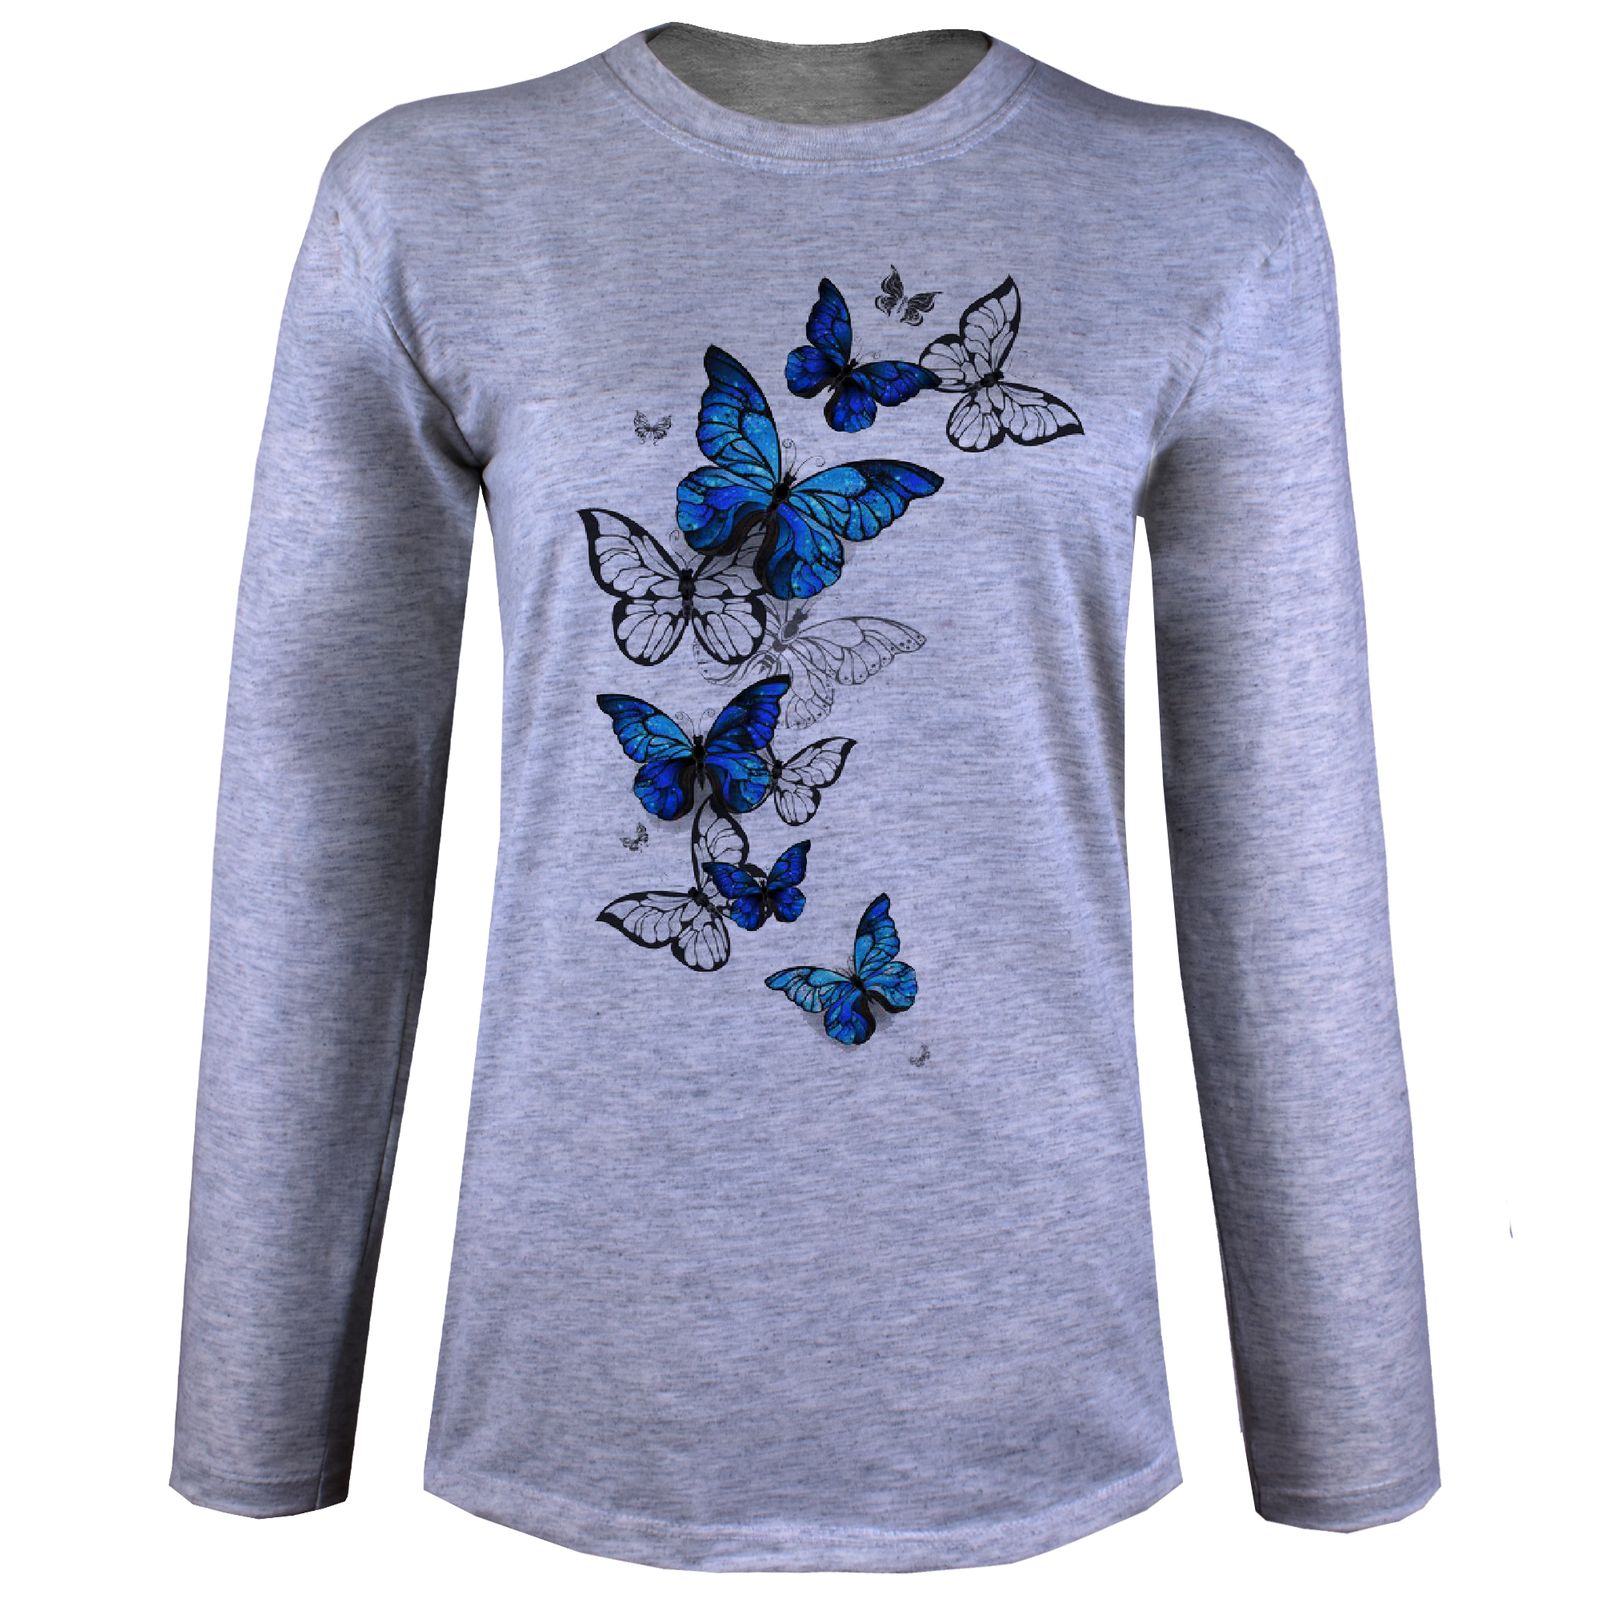 تی شرت آستین بلند زنانه مدل پروانه آبی W30 -  - 2